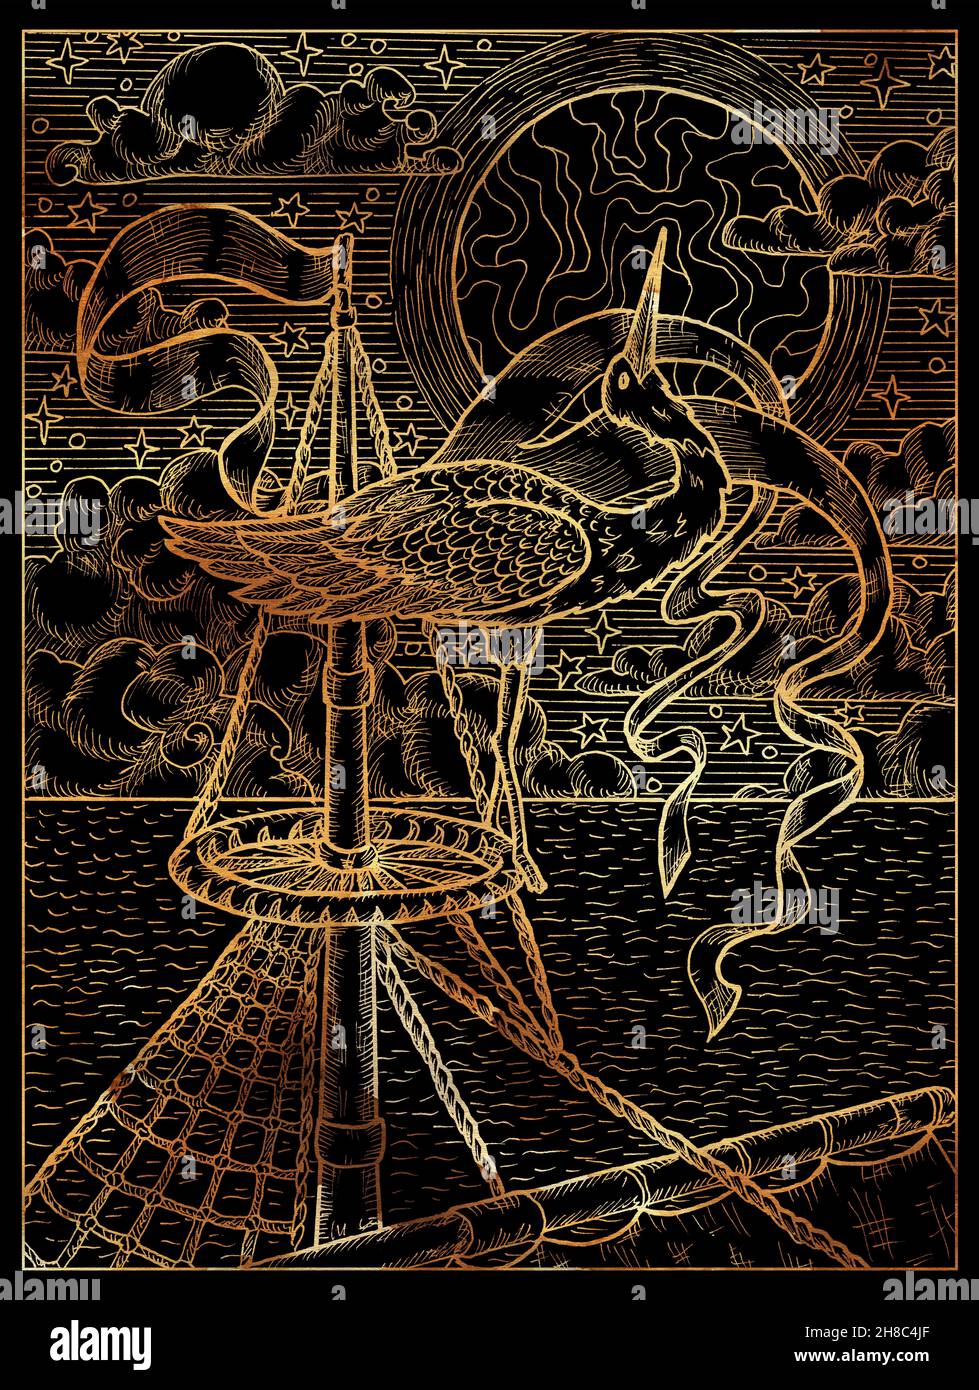 Illustration noire et dorée d'un élégant cigogne dans le nid sur le mât du navire contre le fond de la mer, de la lune et des nuages.Dessins vintage, conflue marine Banque D'Images